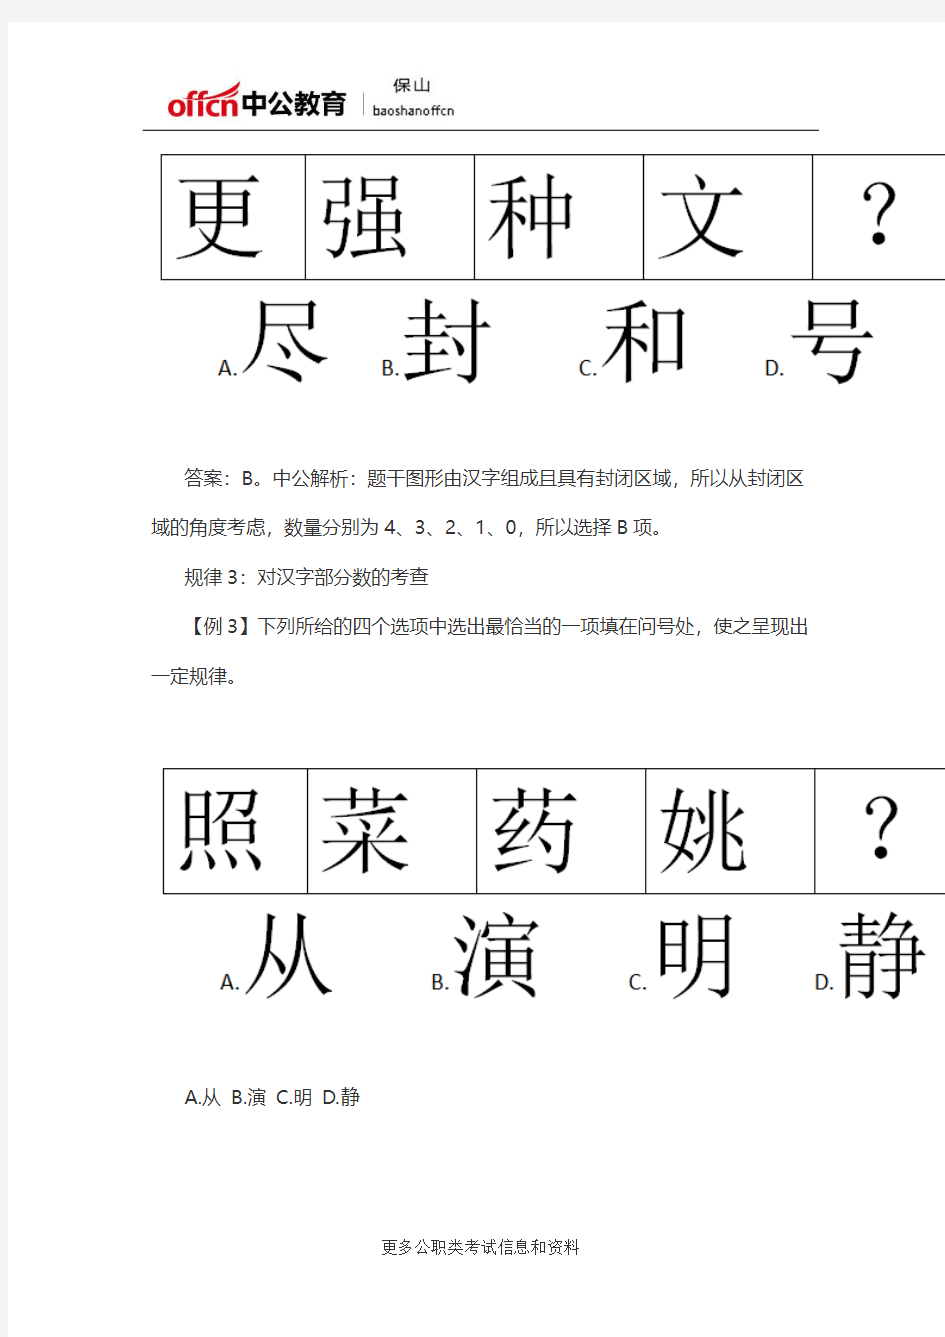 2020国考行测：图形推理对汉字的考查有哪些规律